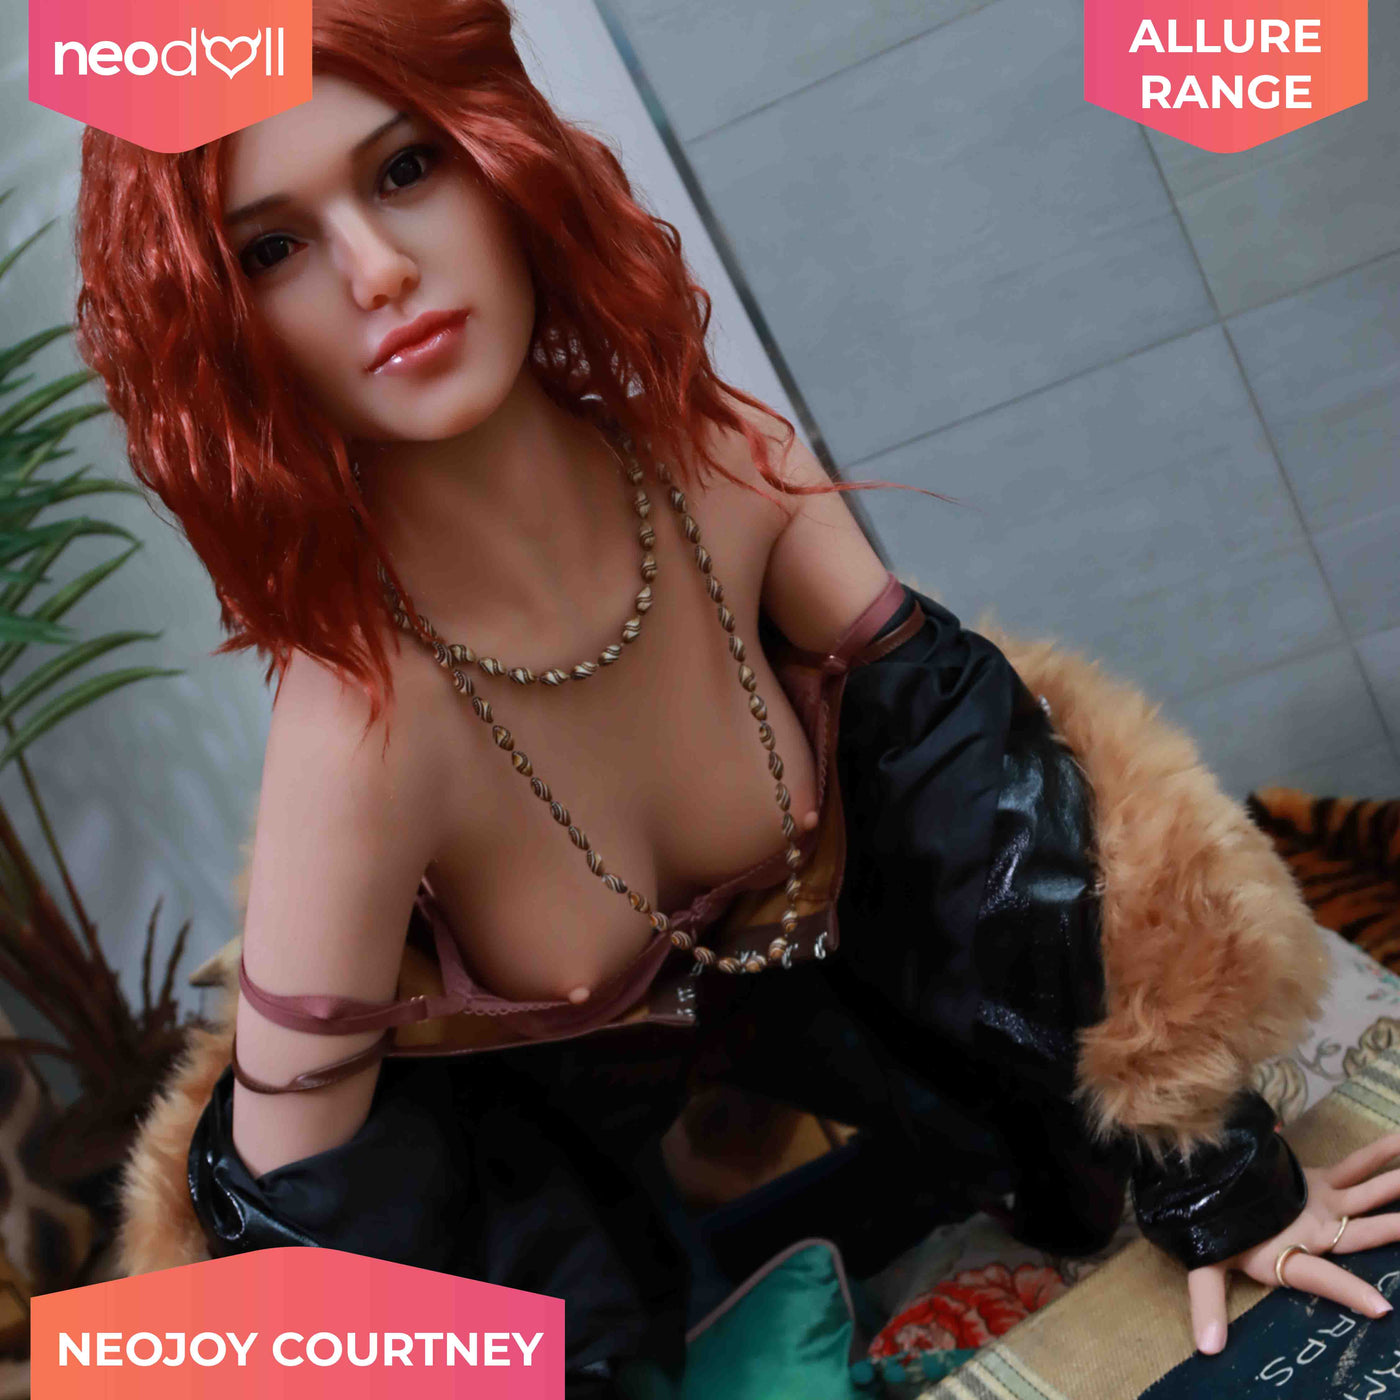 Neodoll Allure - Courtney - Silicone TPE Hybrid Sex Doll - 157cm